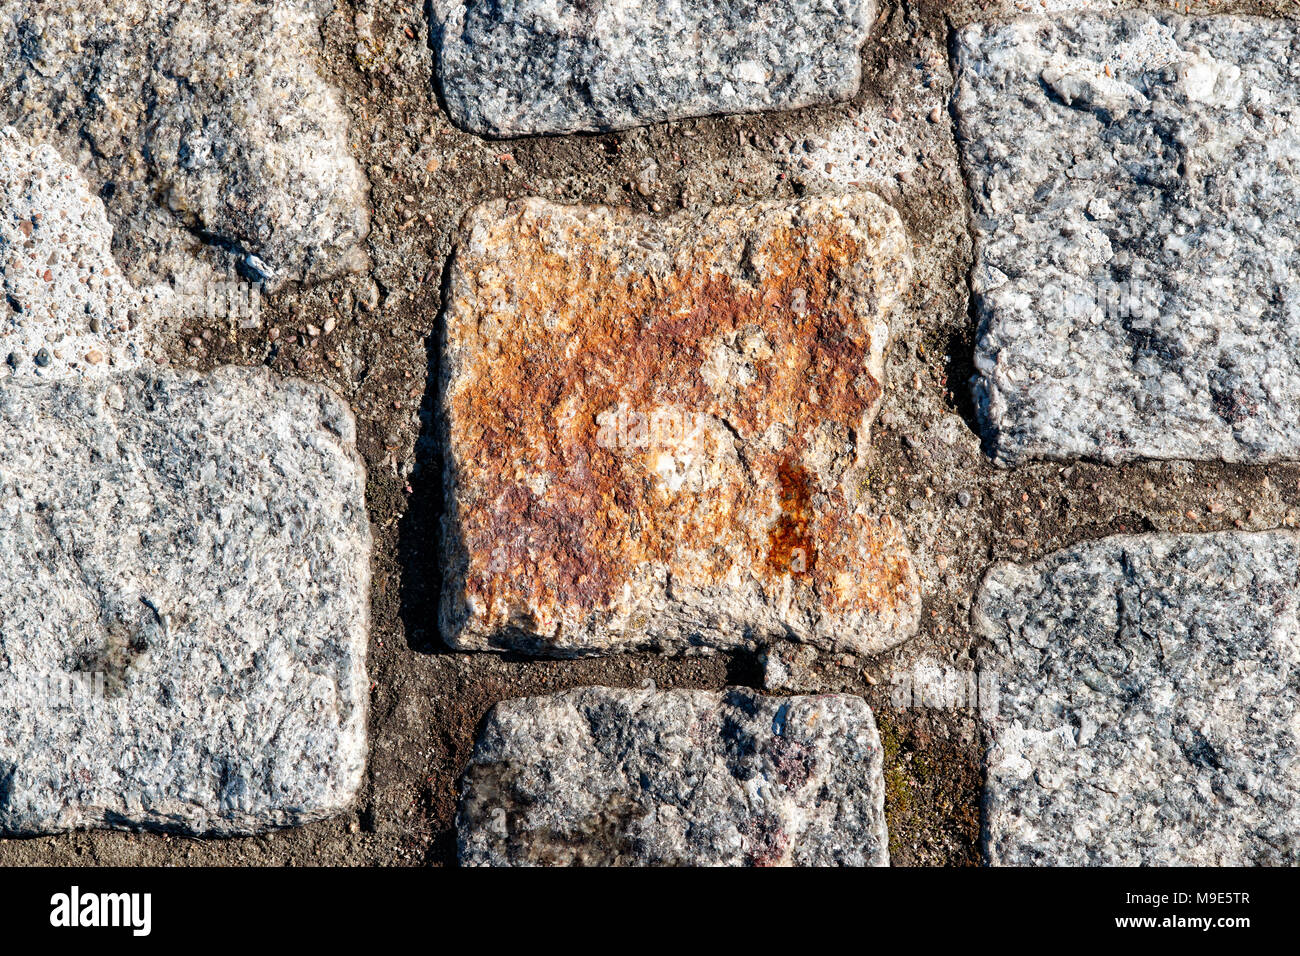 Textur von einem harten Stein Pflastersteine von grauen und blauen Farben. Ein brauner Block in der Mitte. Grunge raue Oberfläche Stockfoto